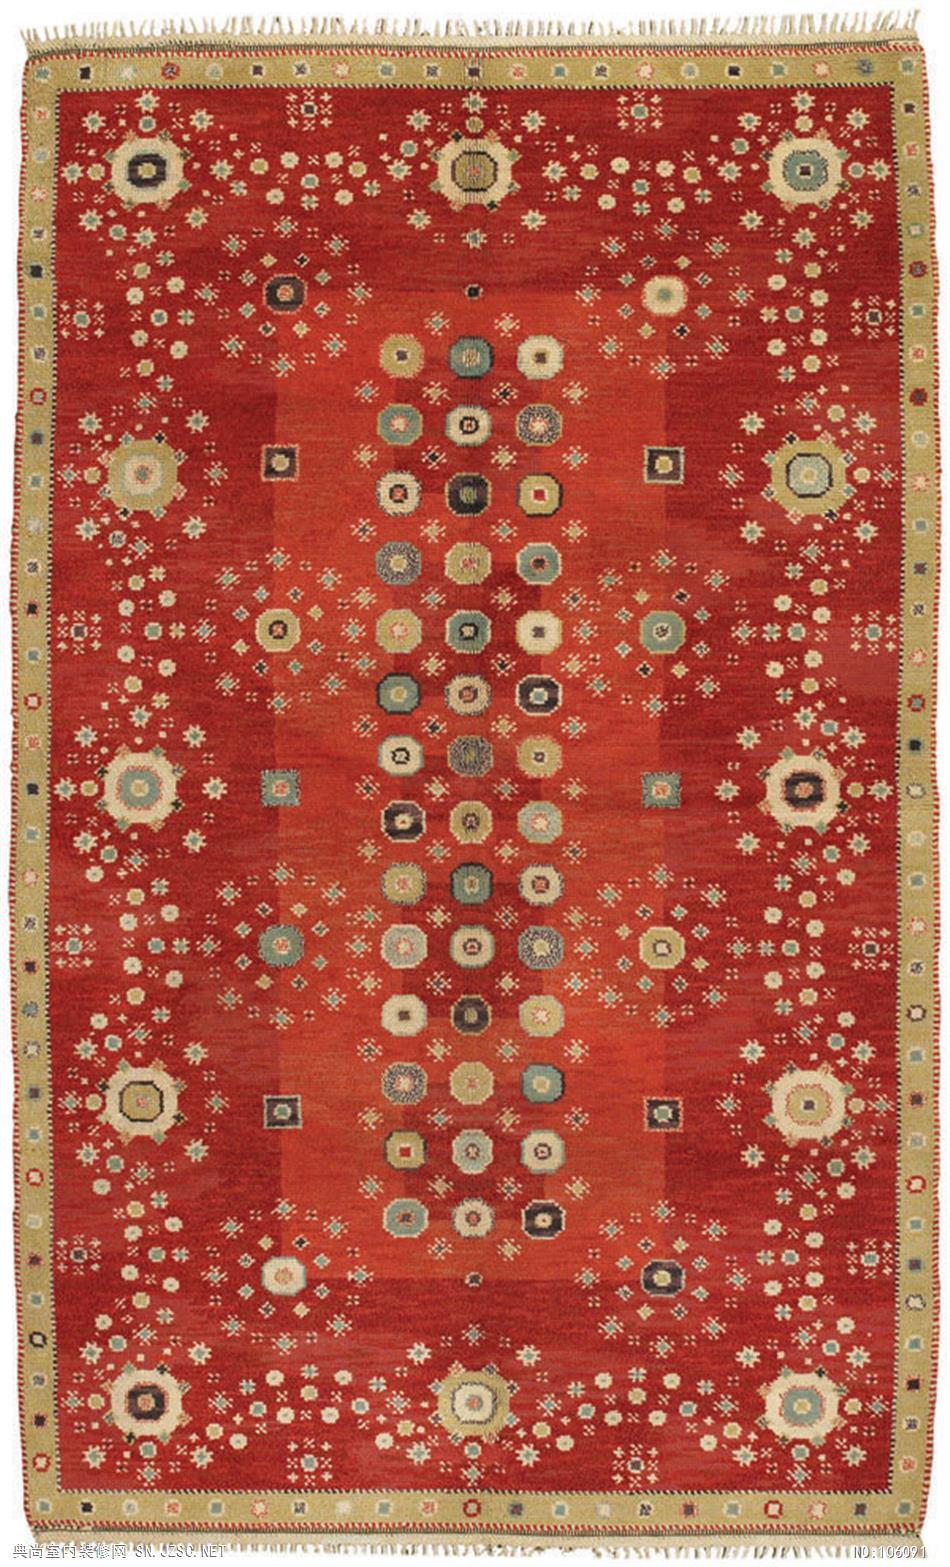 欧式风格地毯 (508)